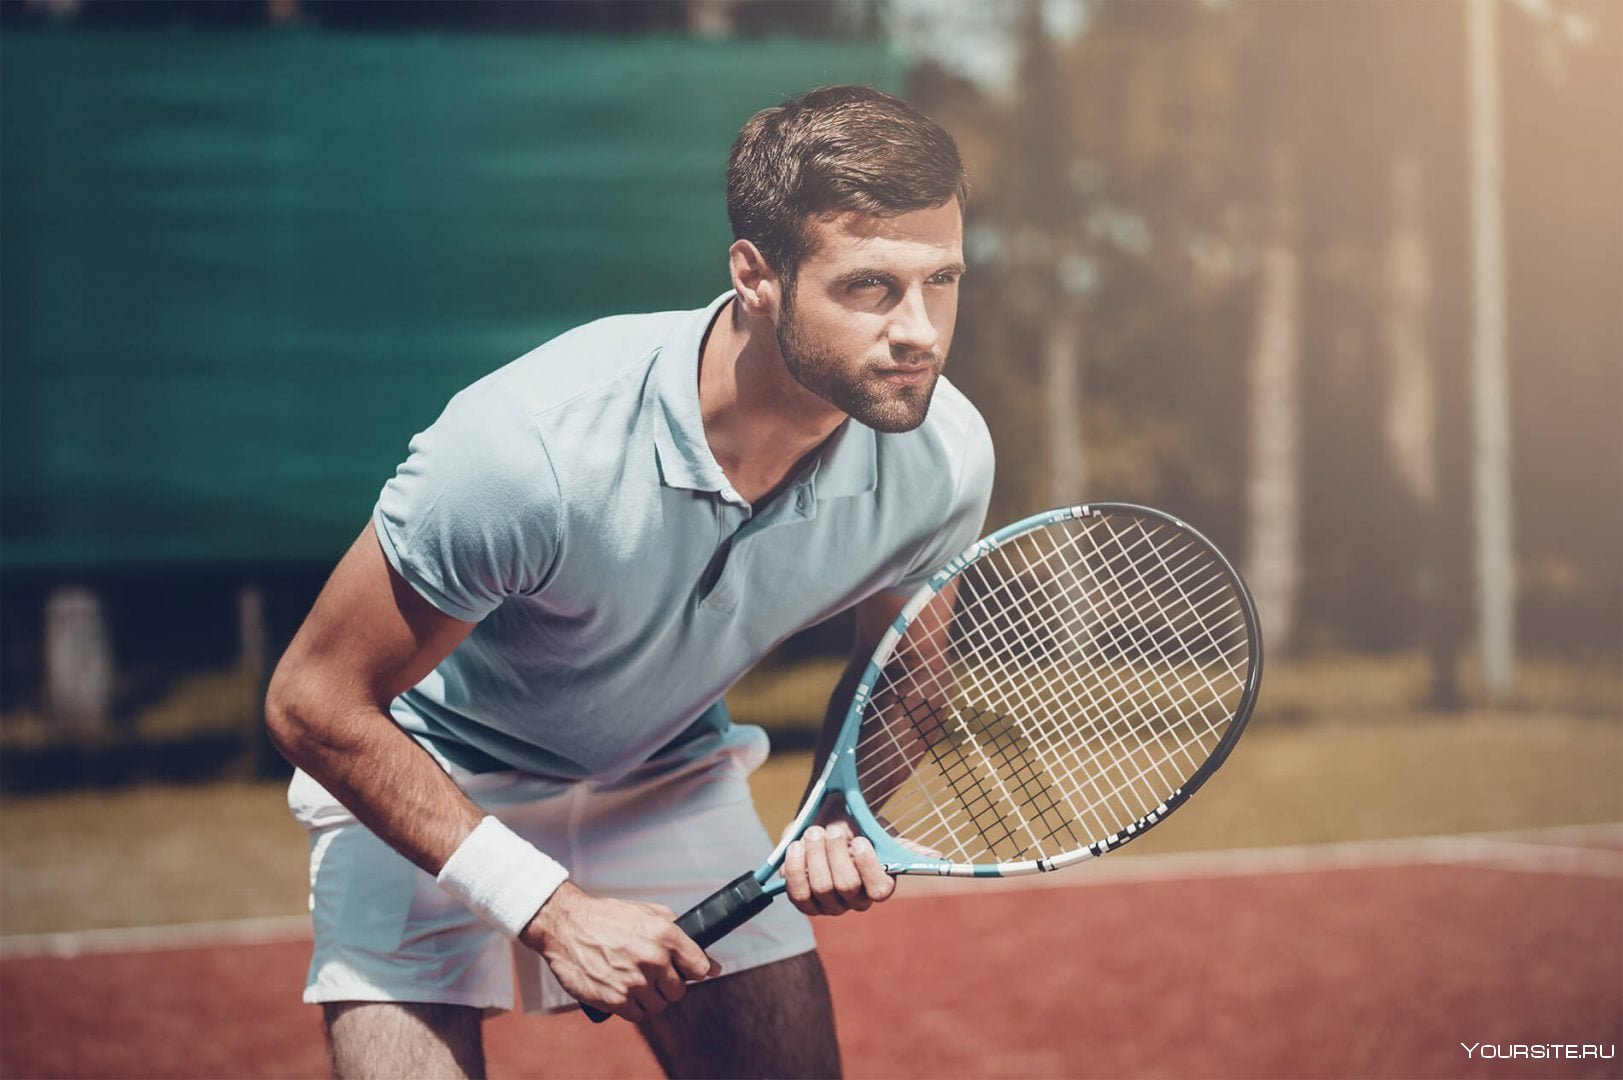 Увлекаться теннисом. Роджер Федерер с ракеткой. Теннисисты мужчины. Мужчина с ракеткой. Ракетка теннисная.